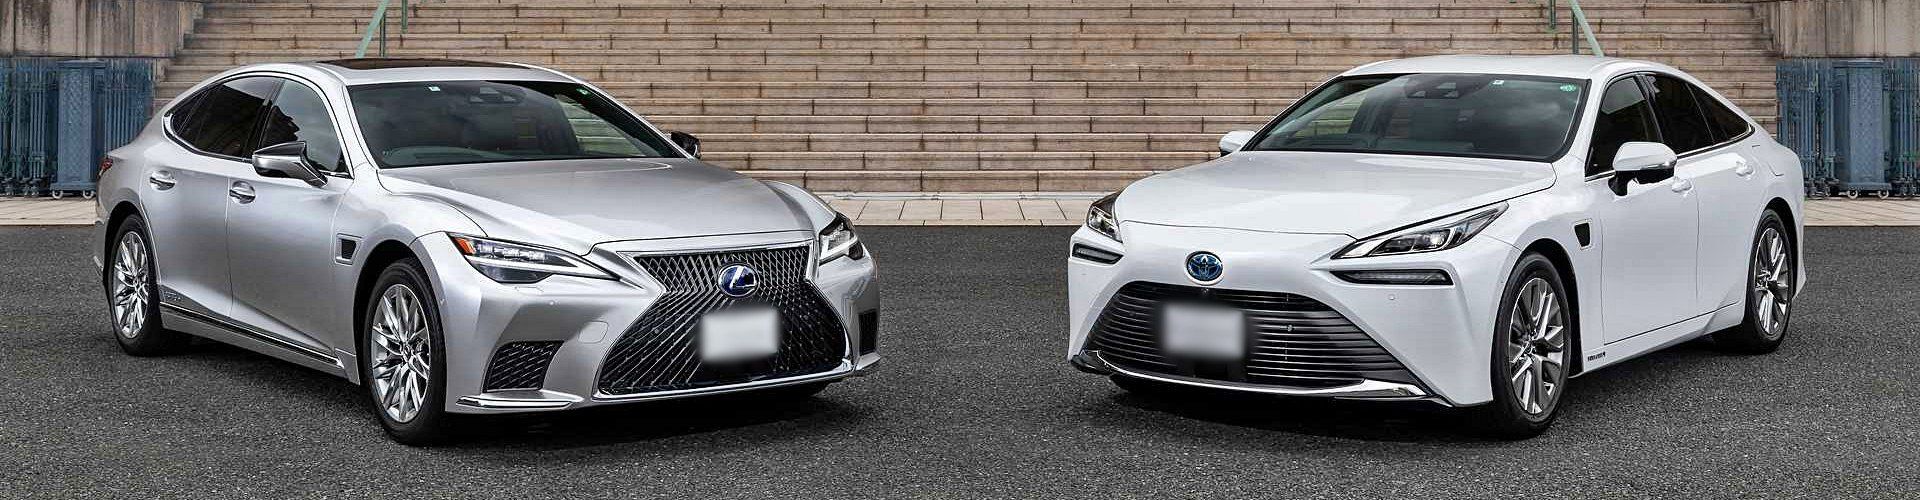 ¿Toyota y Lexus son la misma empresa?